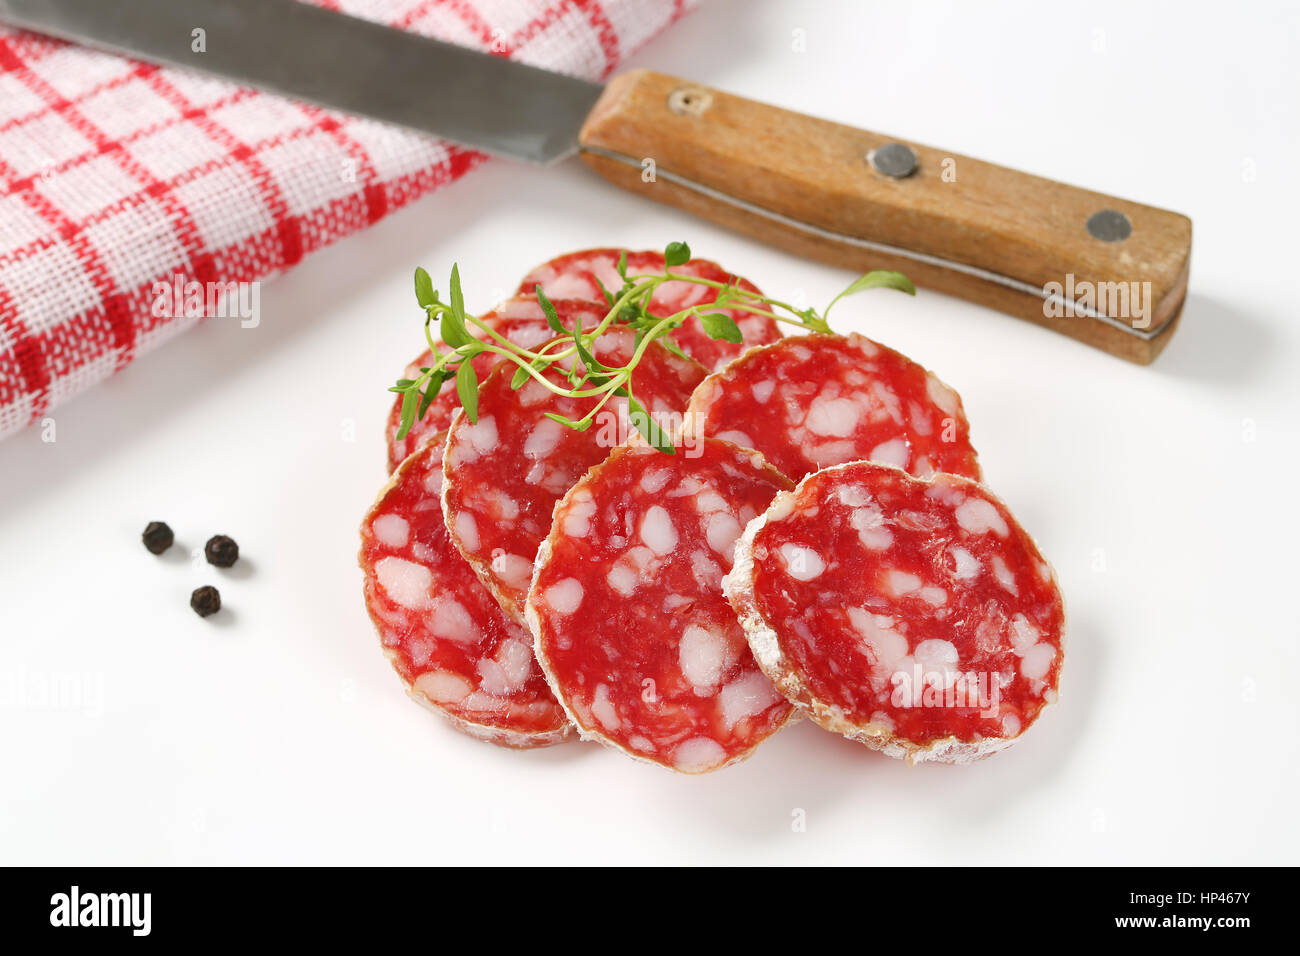 Cerca del francés rodajas de salami seco, cuchillo de cocina y especias sobre fondo blanco. Foto de stock